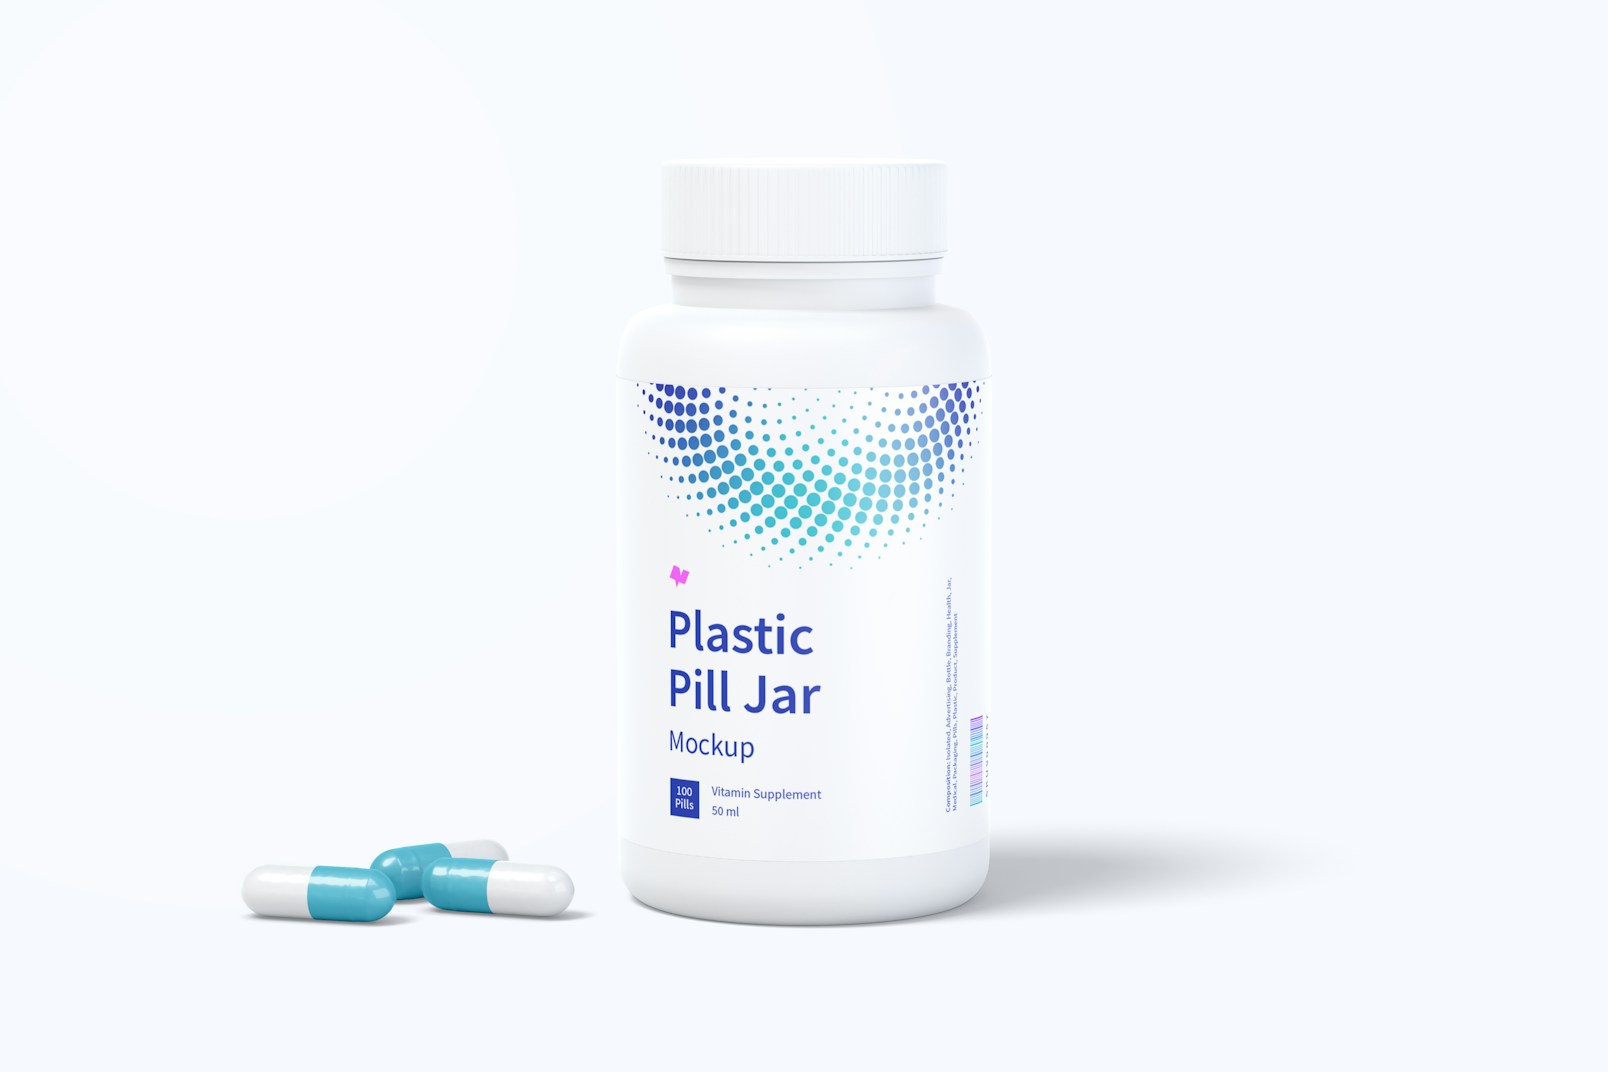 Plastic Pill Jar Mockup, Front View